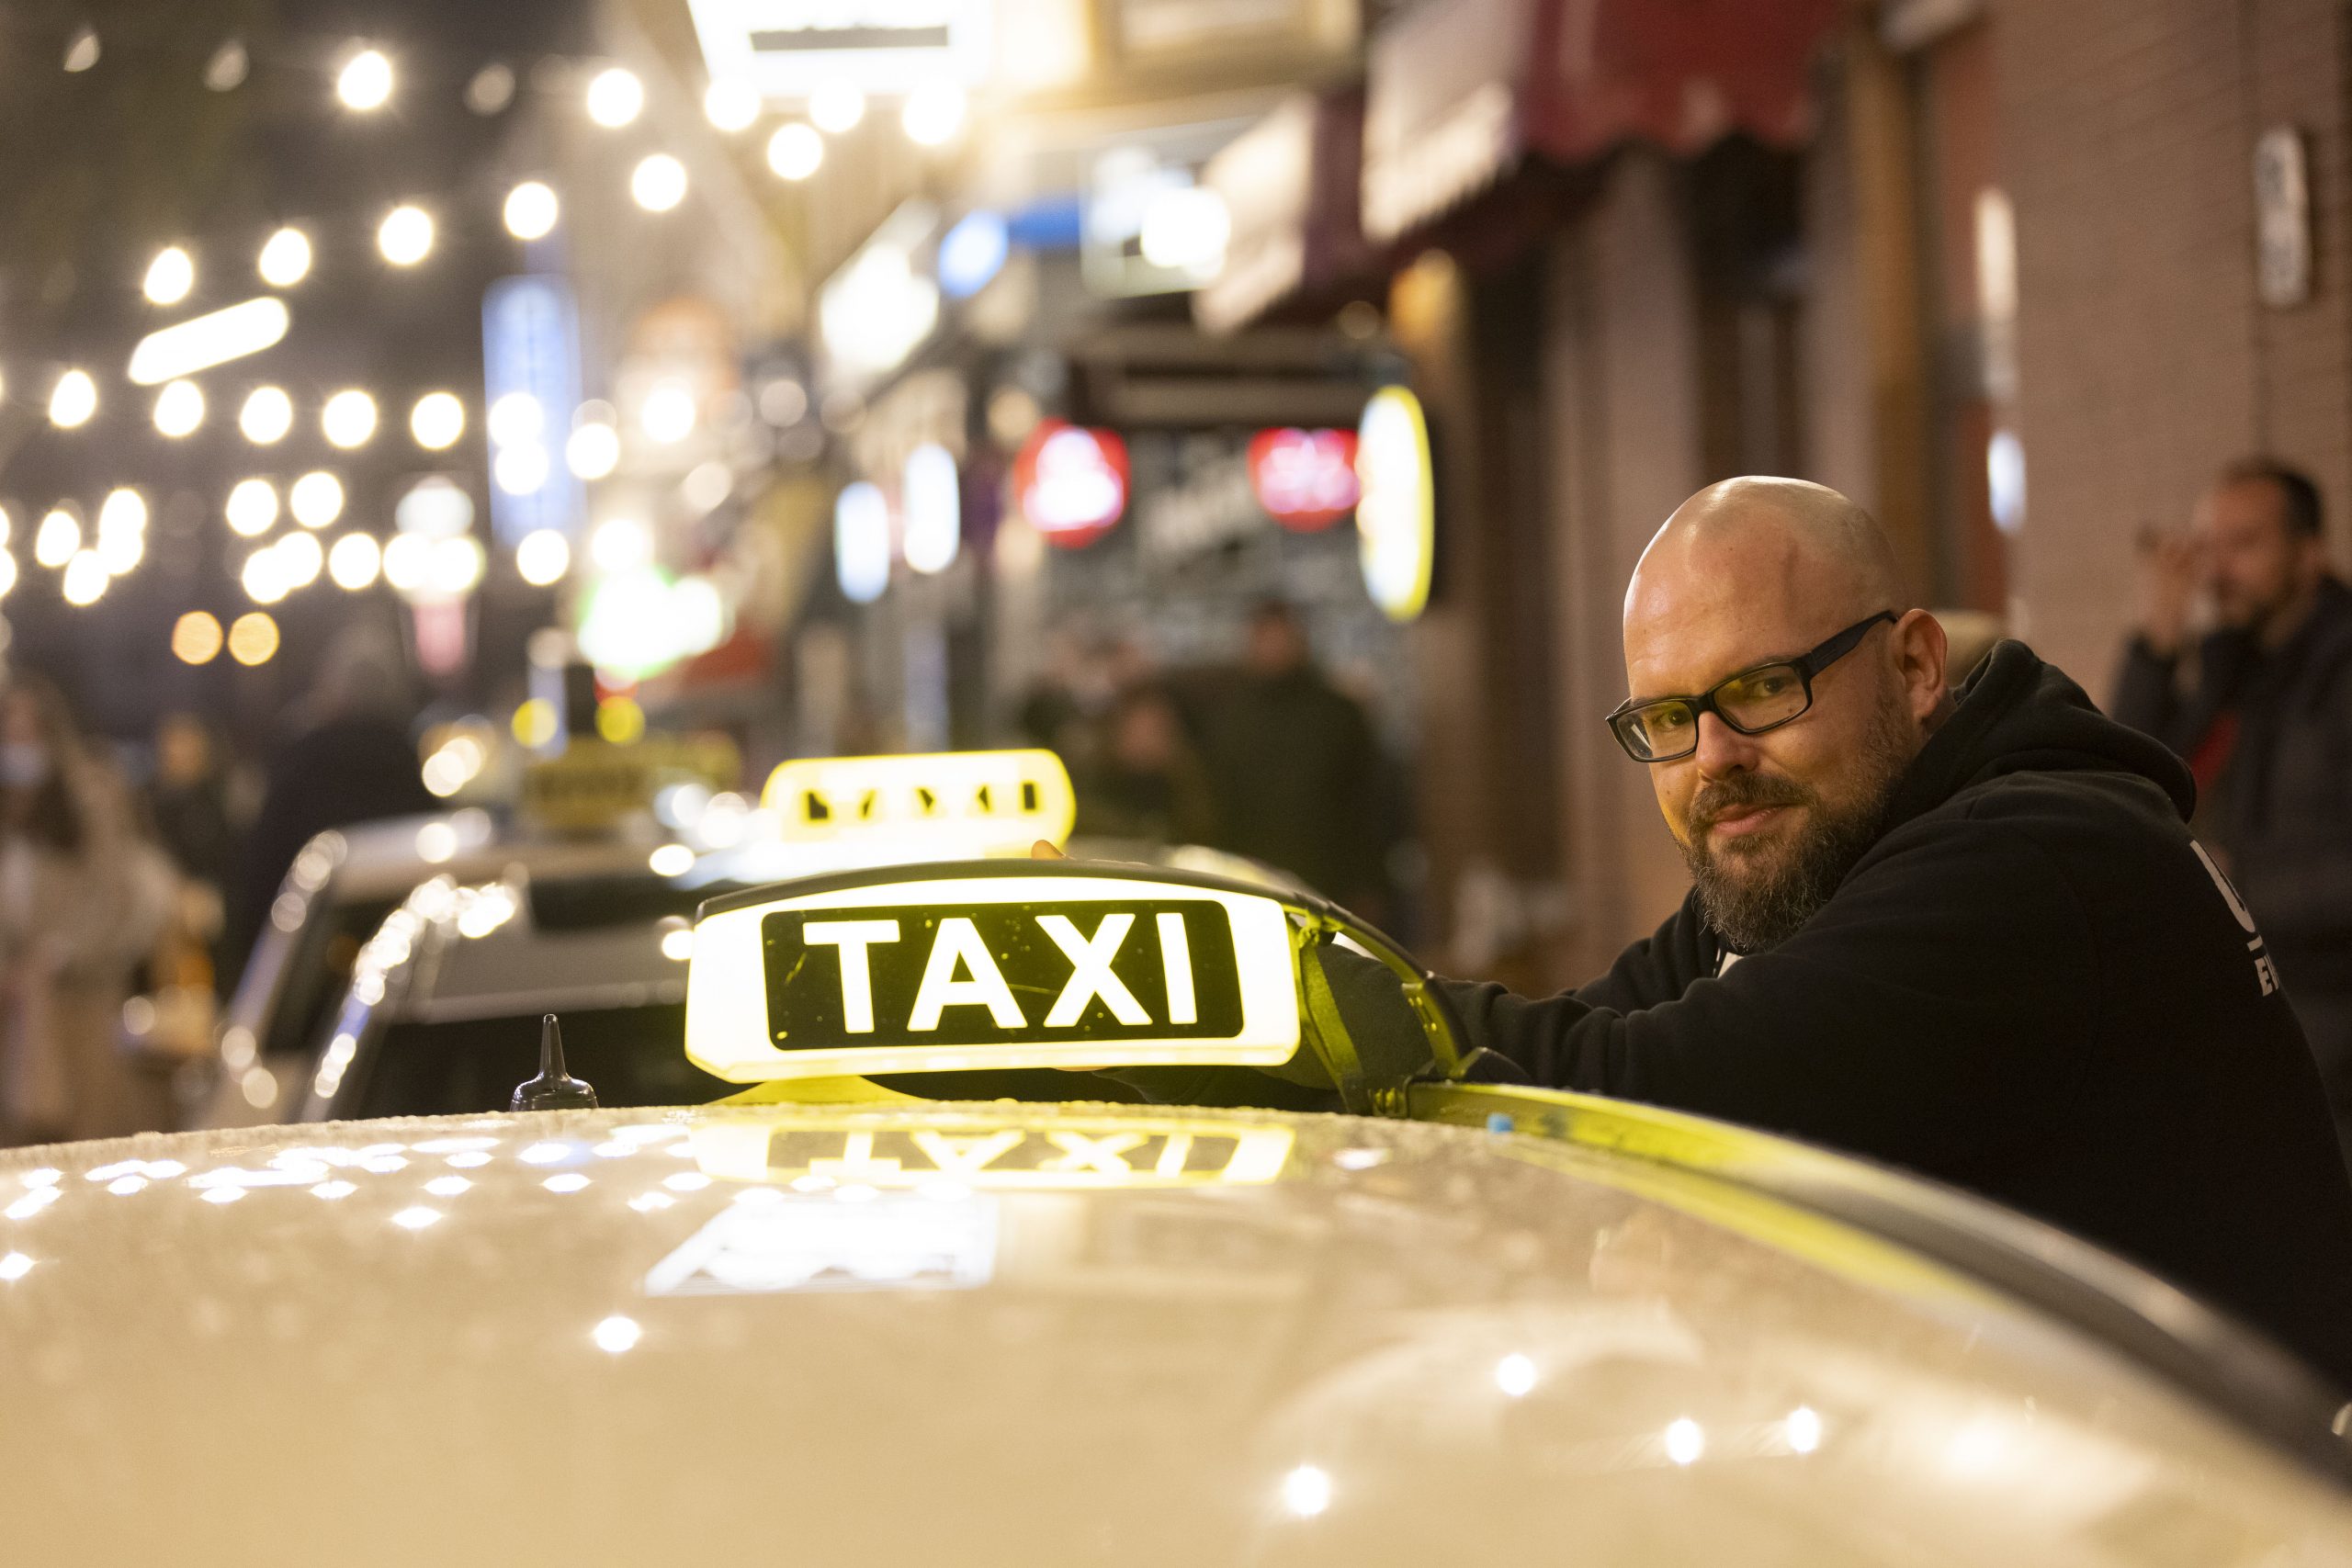 Henrik Moss (44), besser bekannt als Taxi-Henni, vermittelt rollende Solidarität und wird dafür gefeiert.